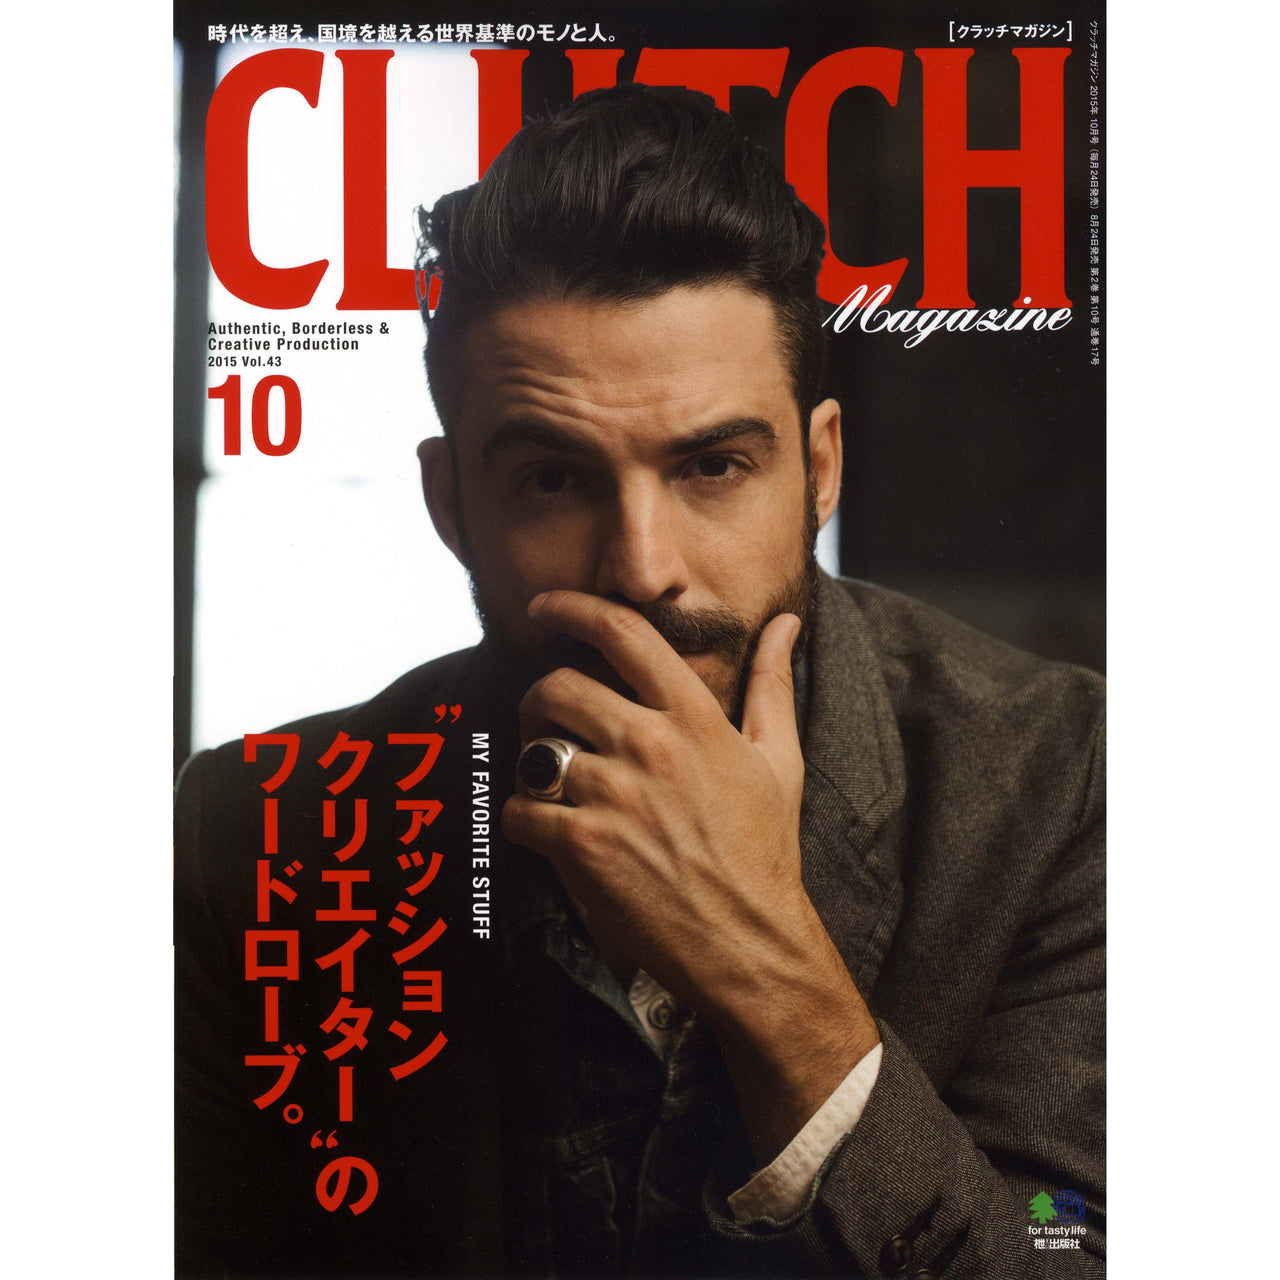 Clutch Magazine Vol.43-Clutch Cafe